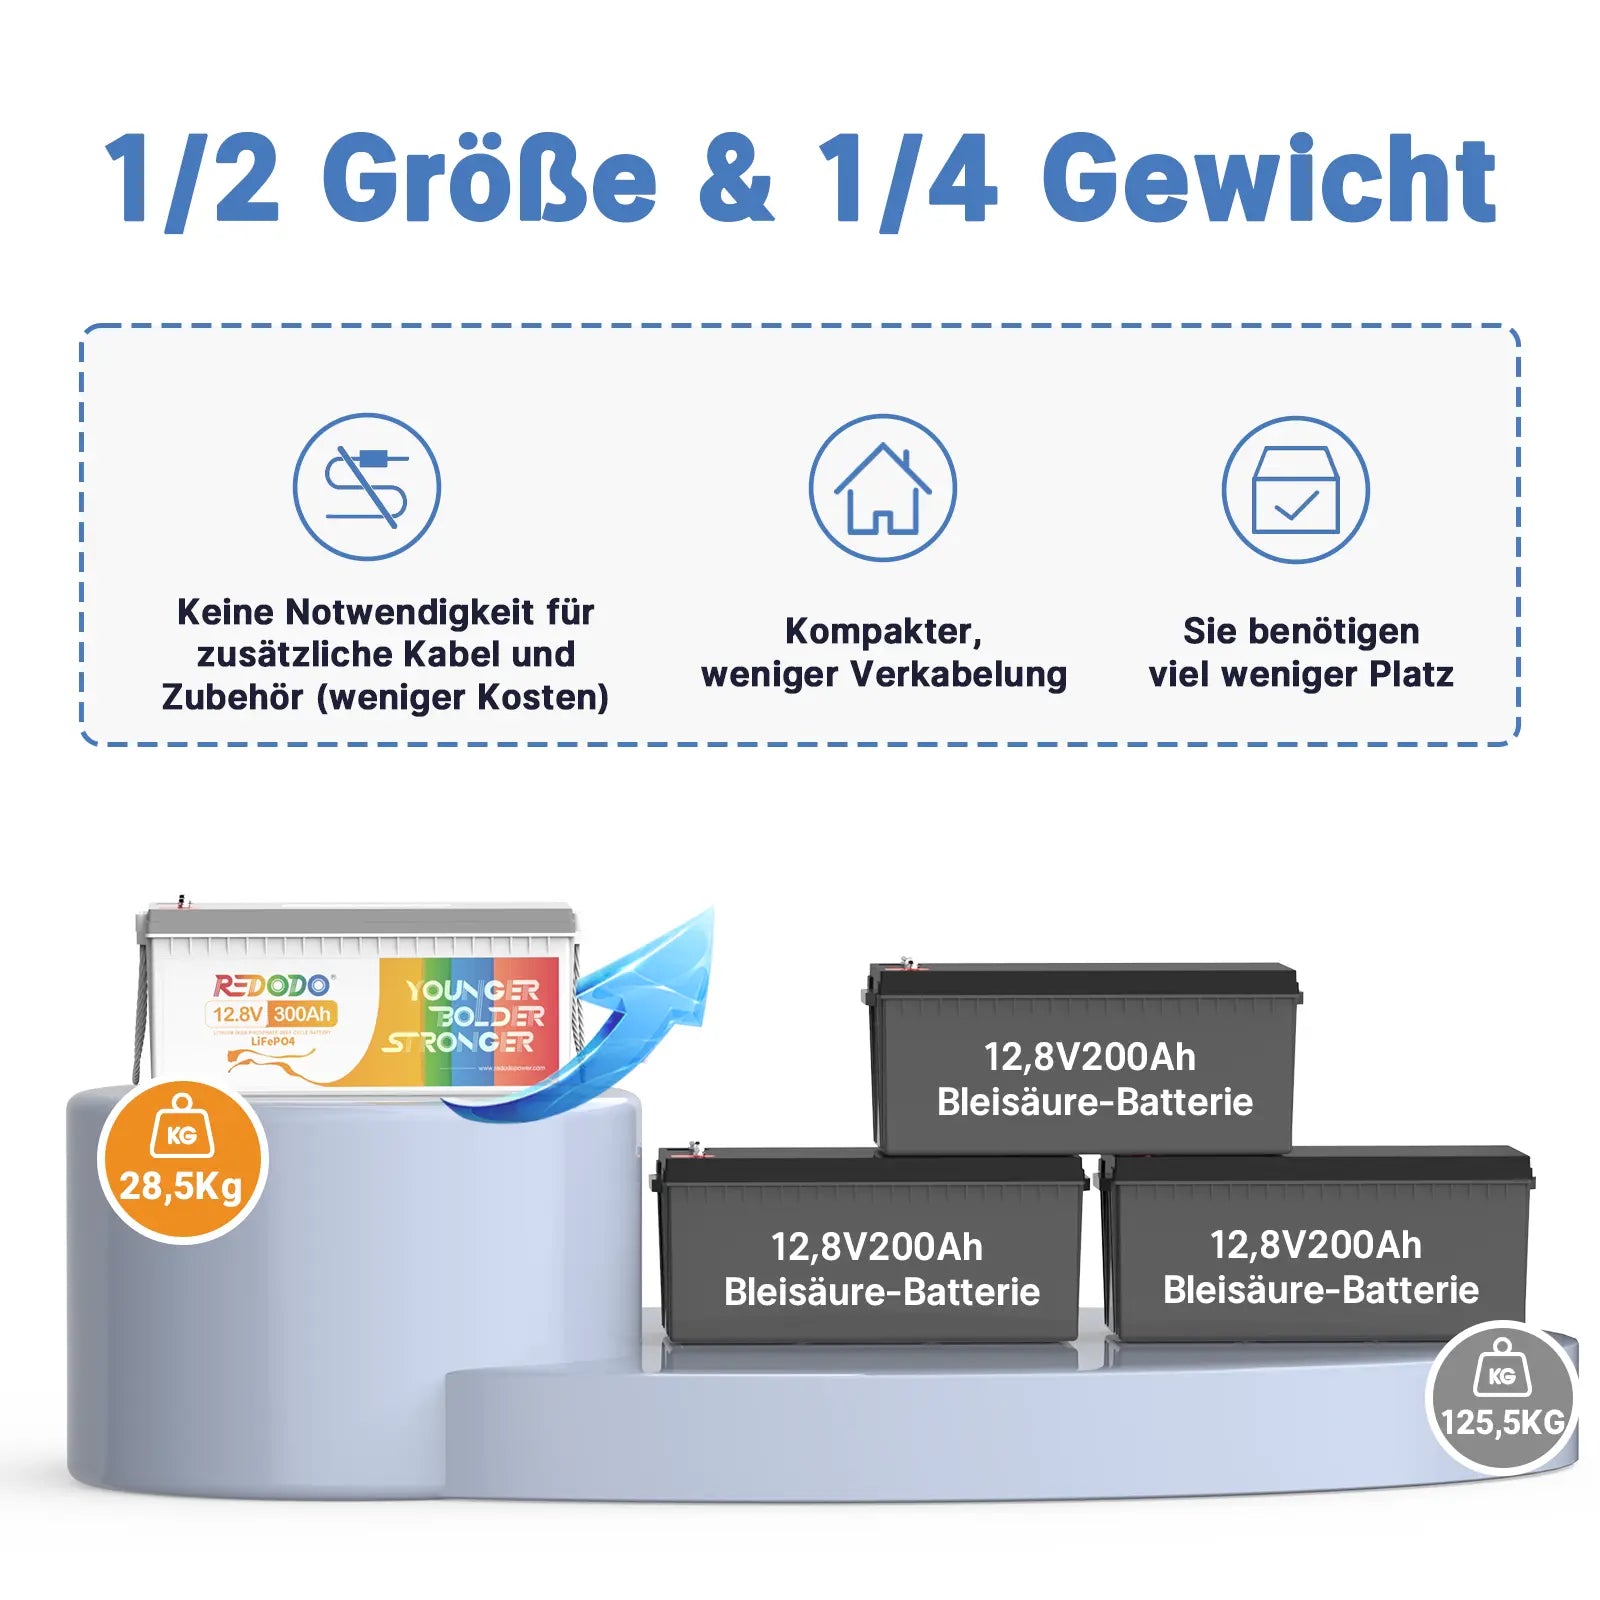 ✅Wie Neu✅Befreiung von 19% MwSt - Redodo 12V 300Ah Deep Cycle LiFePO4 Batterie - nur für Wohngebäude und Deutschland